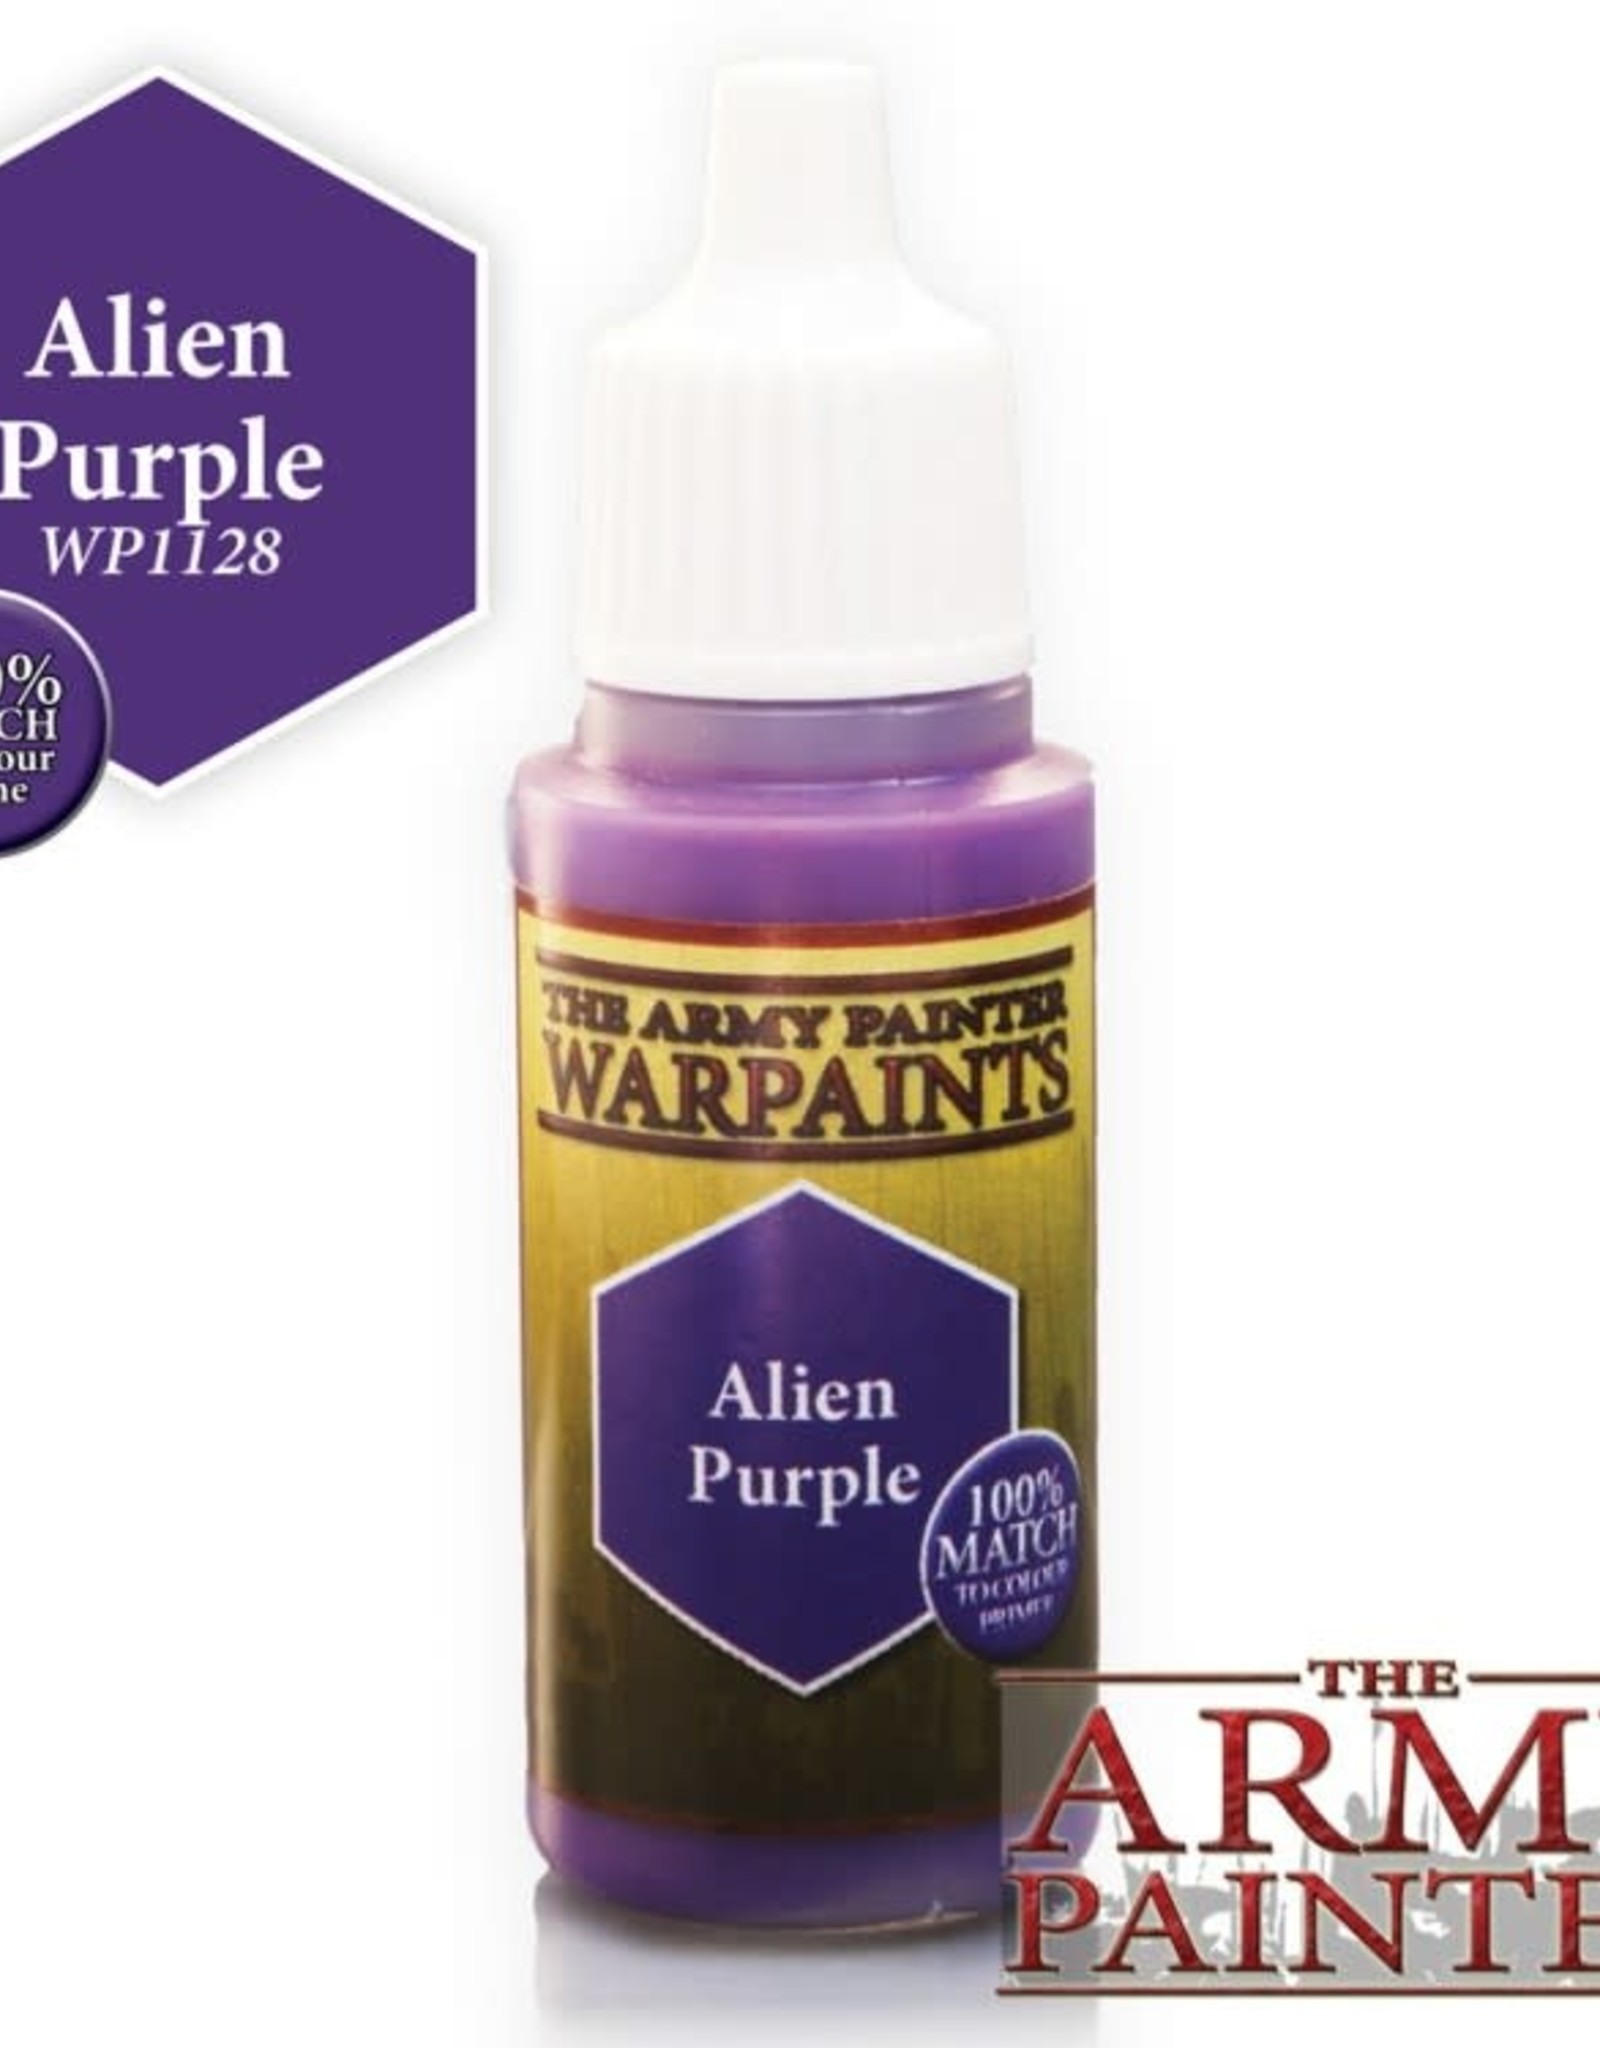 The Army Painter Warpaints - Alien Purple